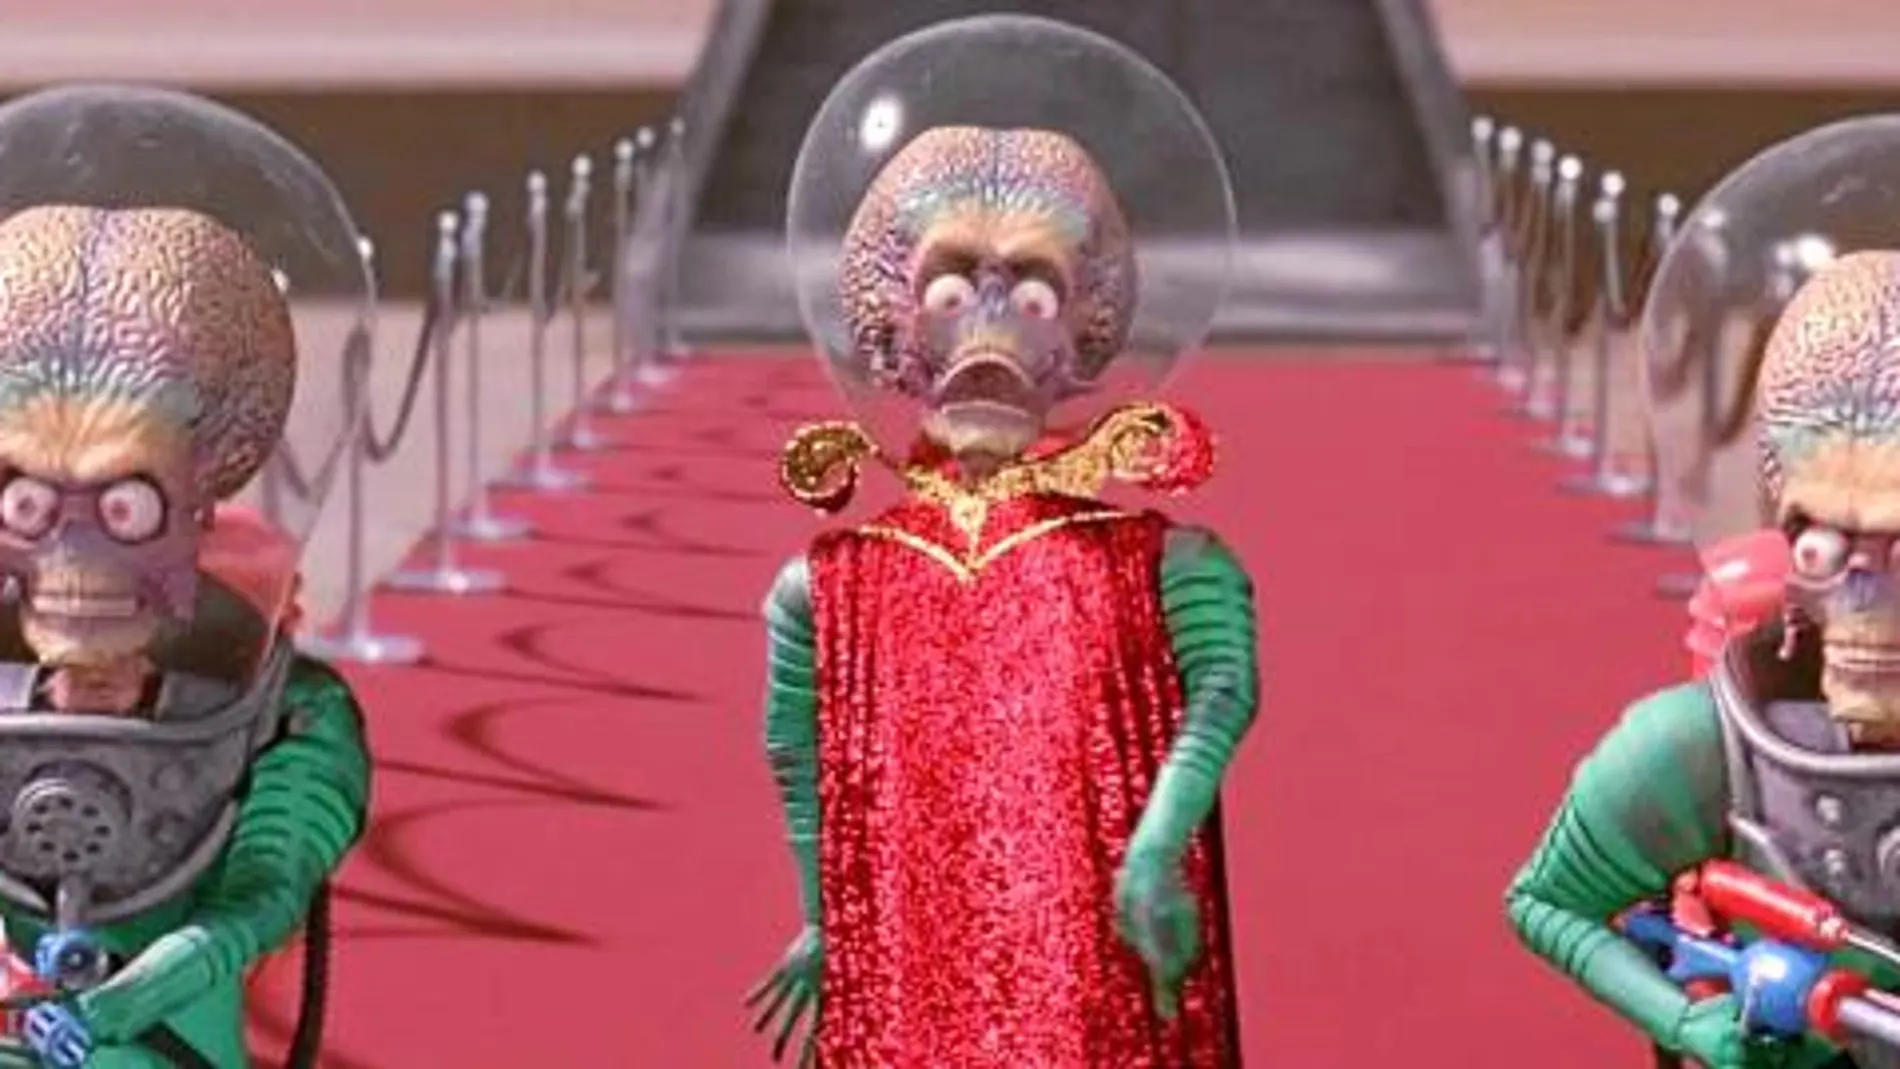 Paradia: Tim Burton hizo una parodia de los extraterrestres malignos con «Mars Attacks!»